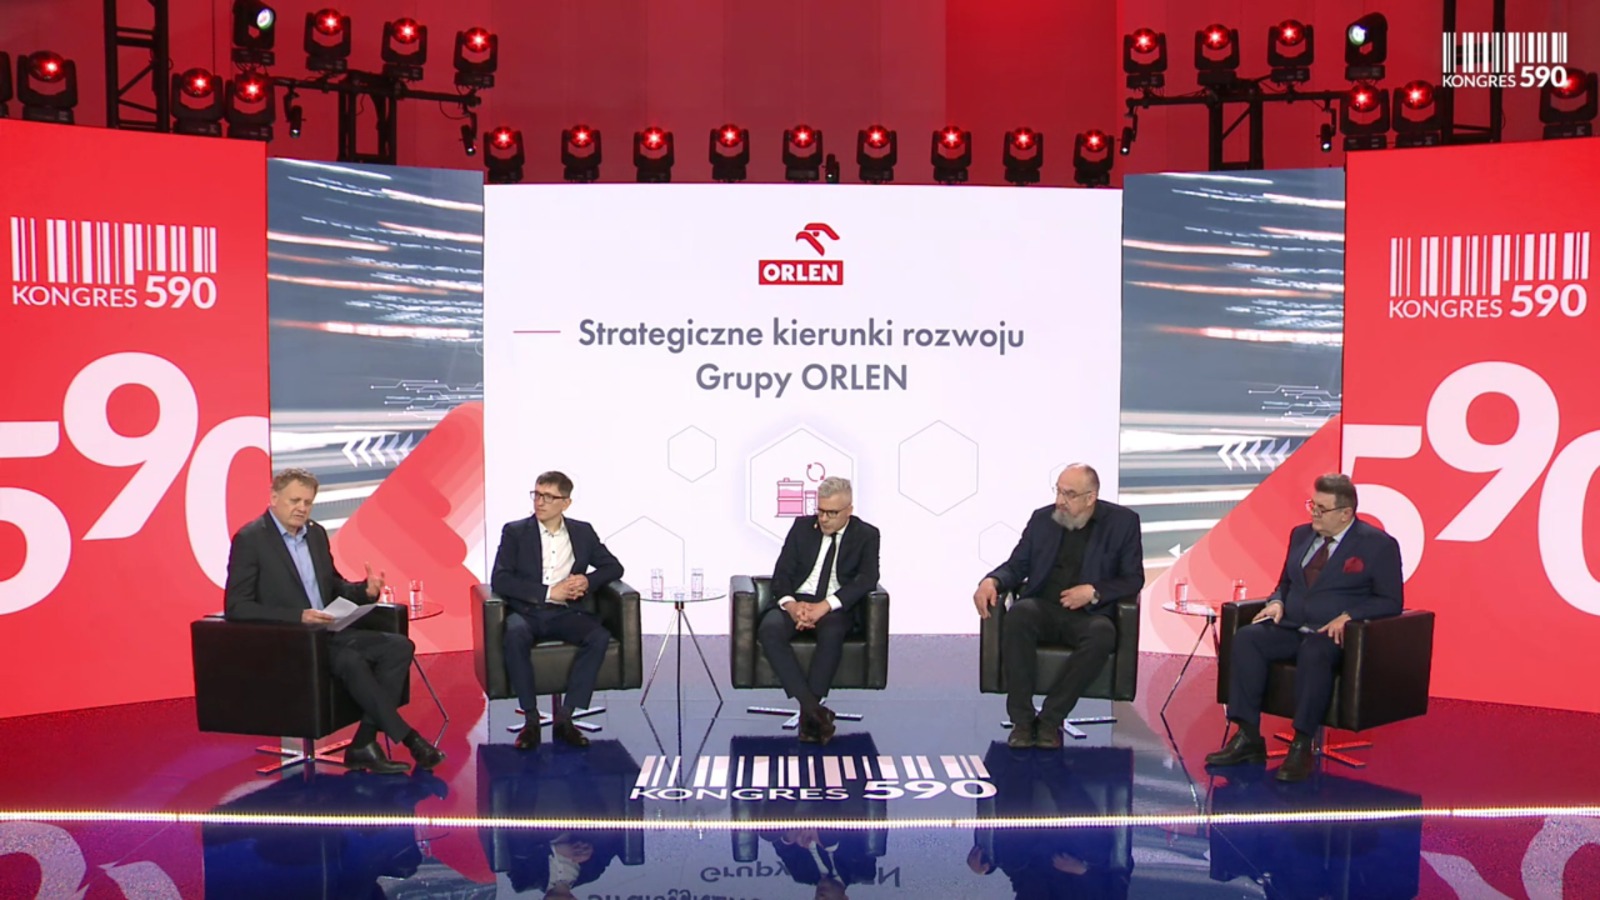 Panel dyskusyjny podczas Kongresu 590. Zdjęcie: BiznesAlert.pl